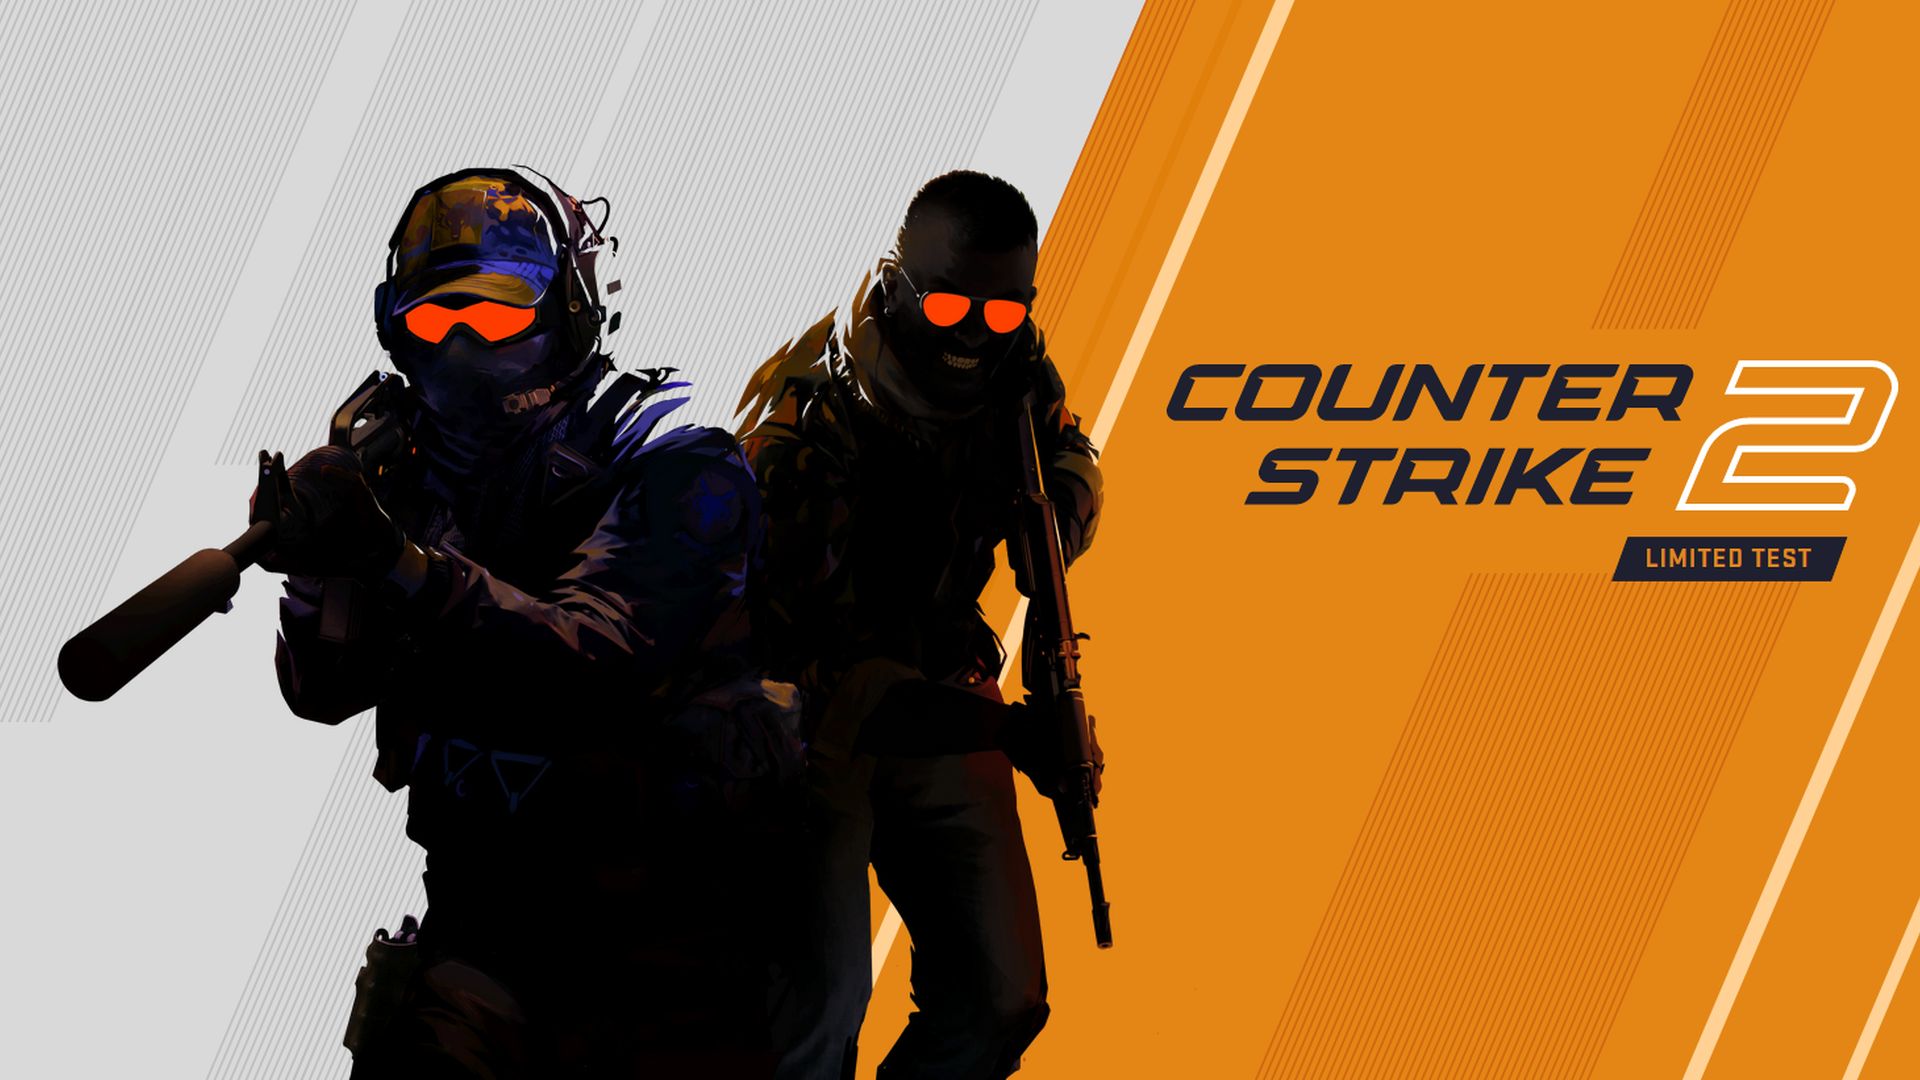 بازی Counter-Strike 2 احتمالا هفته آینده منتشر شود